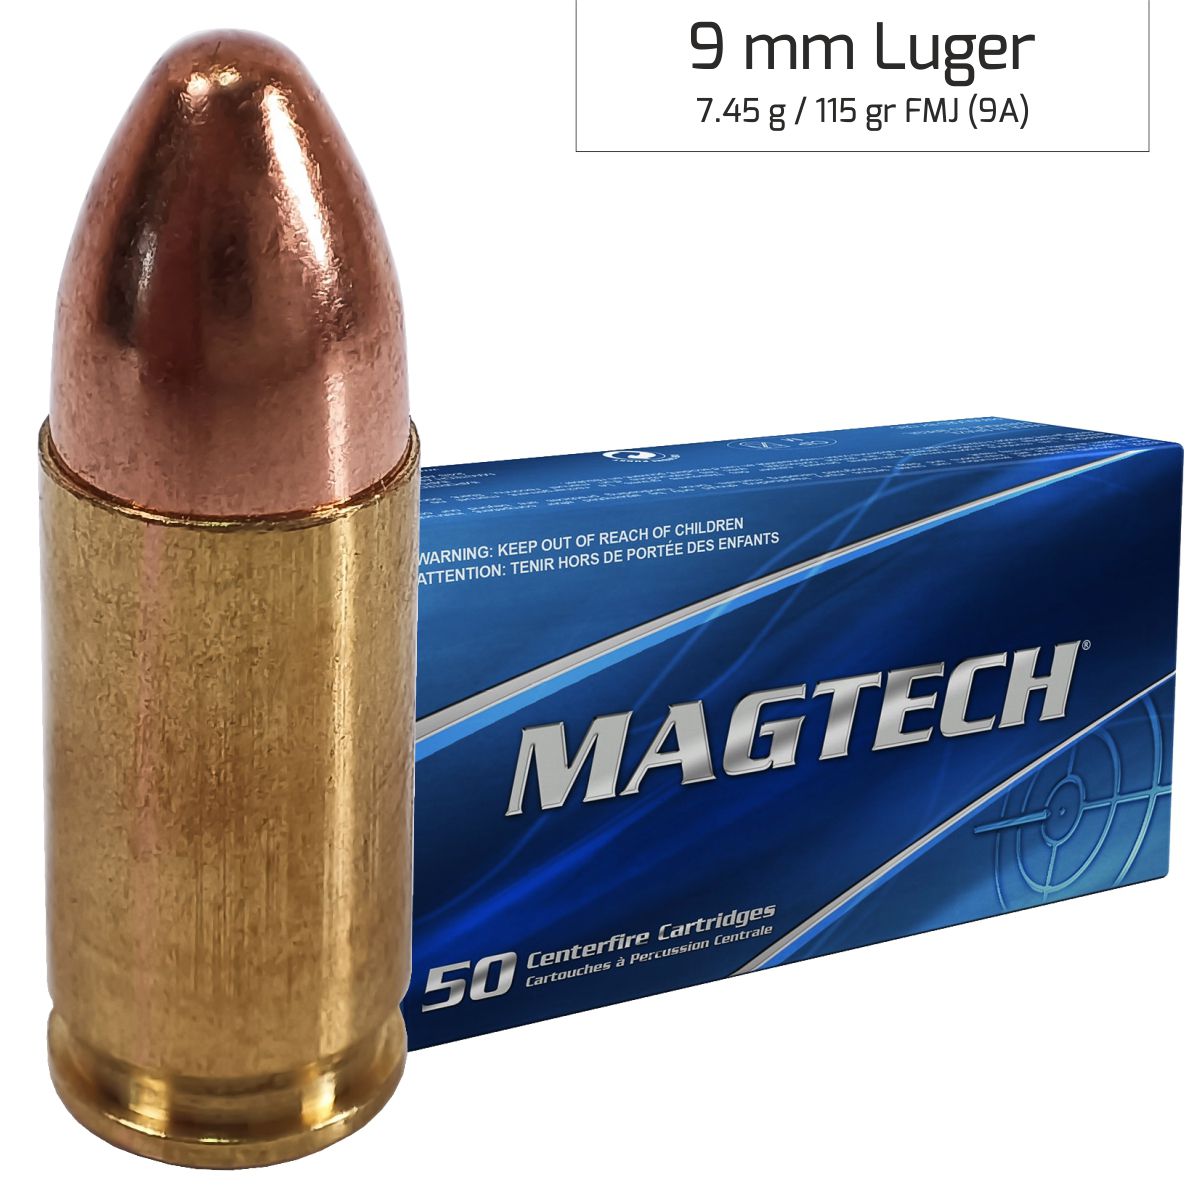 Náboj Magtech 9 mm Luger FMJ FLAT (9G) Subsonic 9,52g 147gr